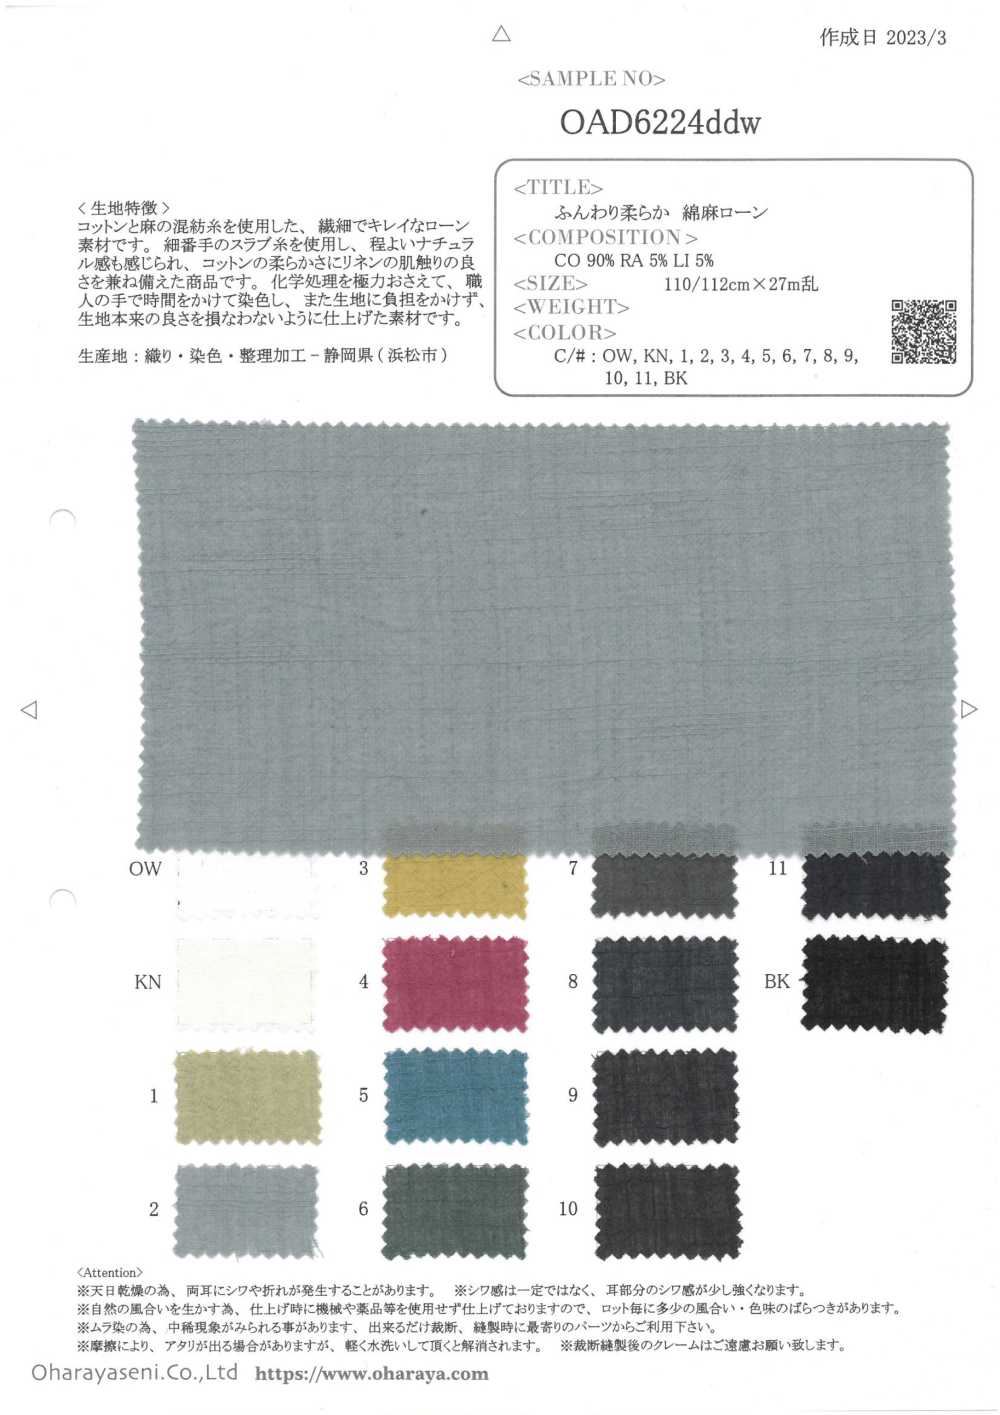 OAD6224DDW Fluffy Linen Lawn[Textile / Fabric] Oharayaseni